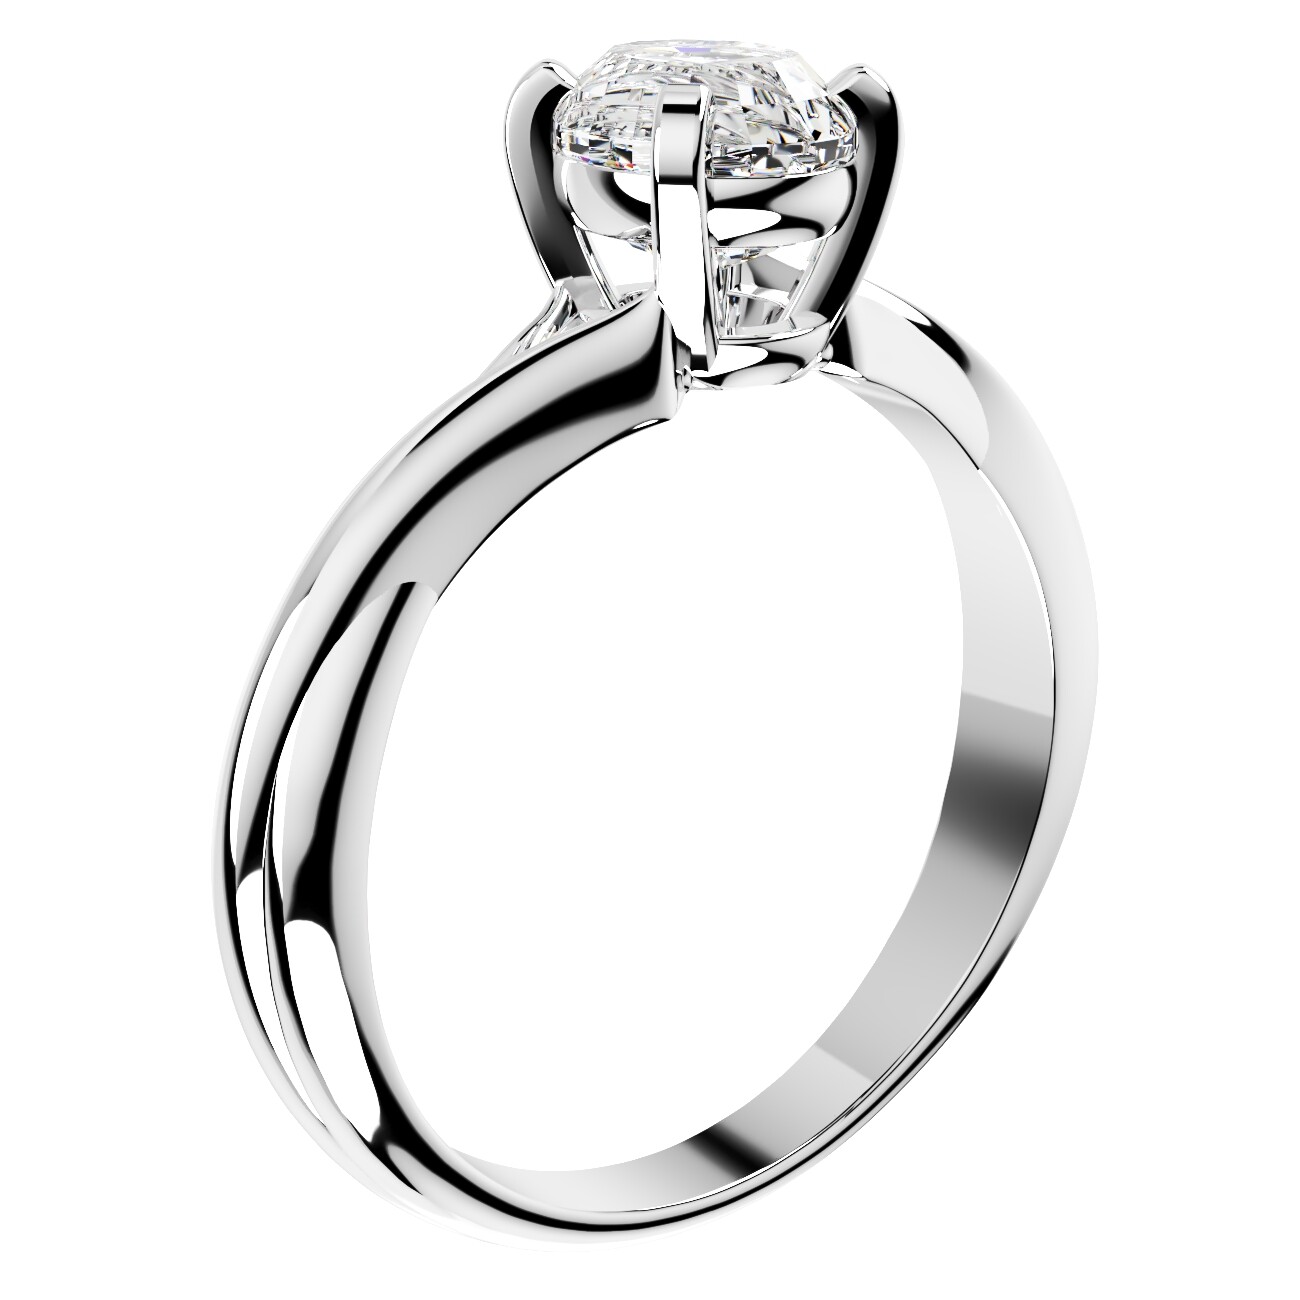 ArtStation - Twisted Oval Gemstone Engagement Ring 3D CAD Design ...